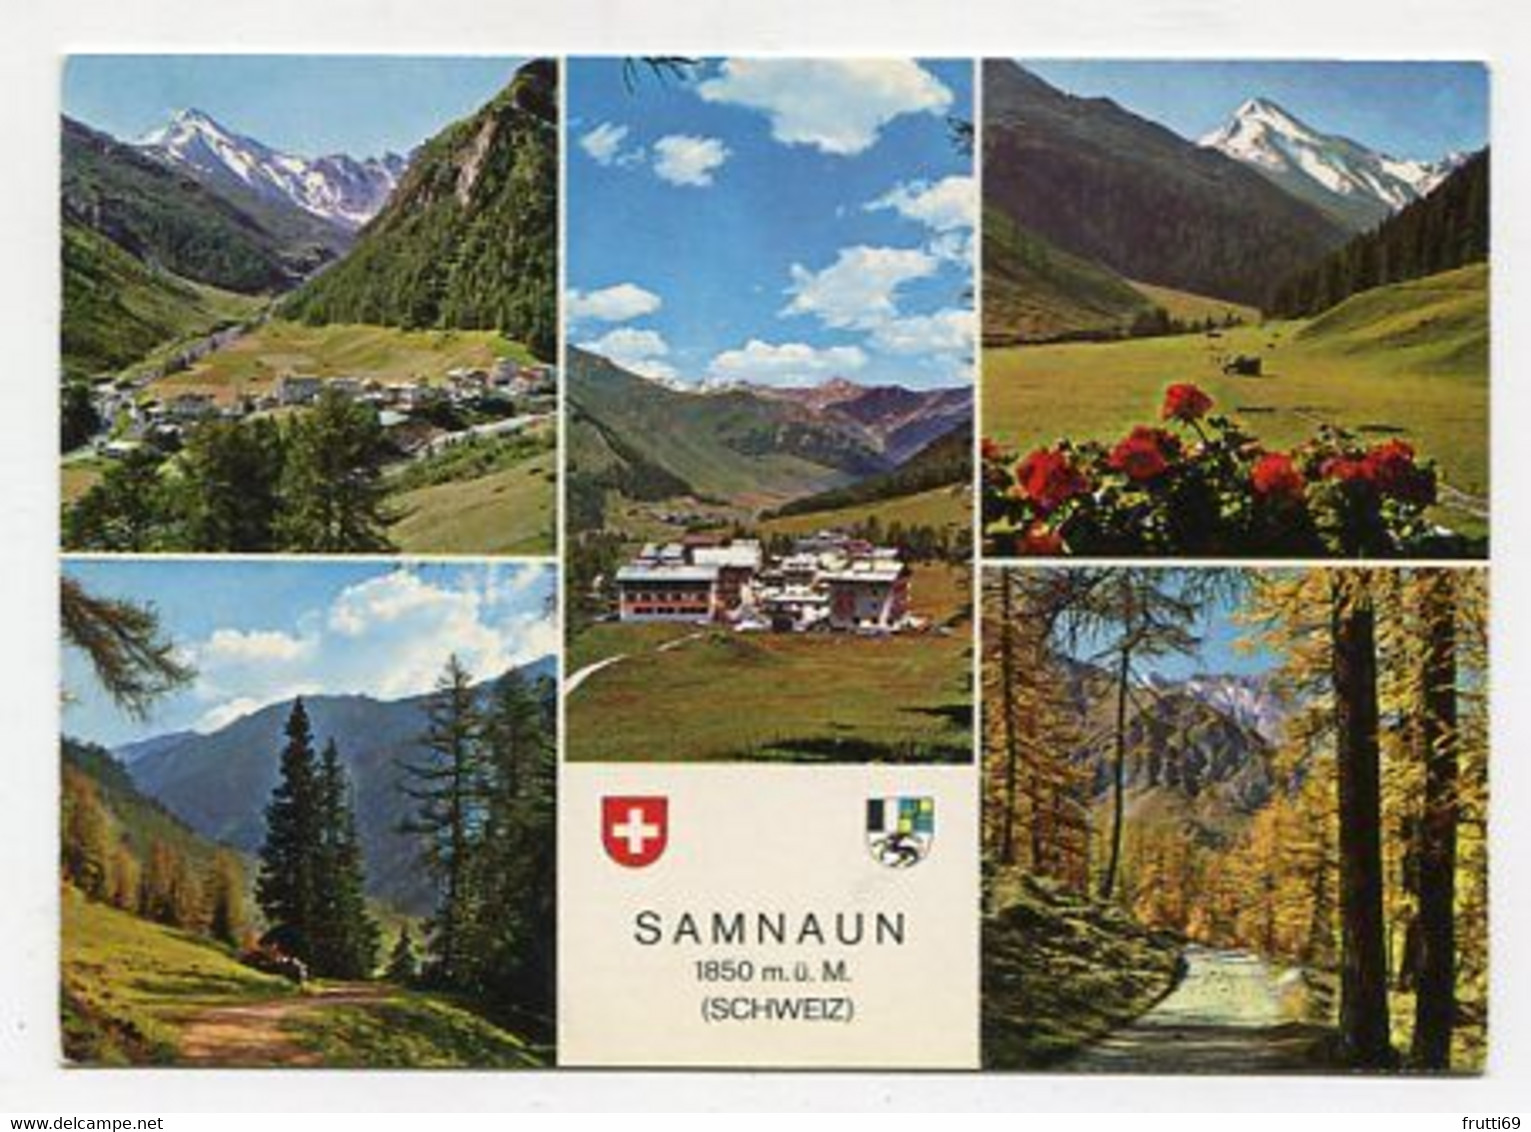 AK 020005 SWITZERLAND - Samnaun - Samnaun